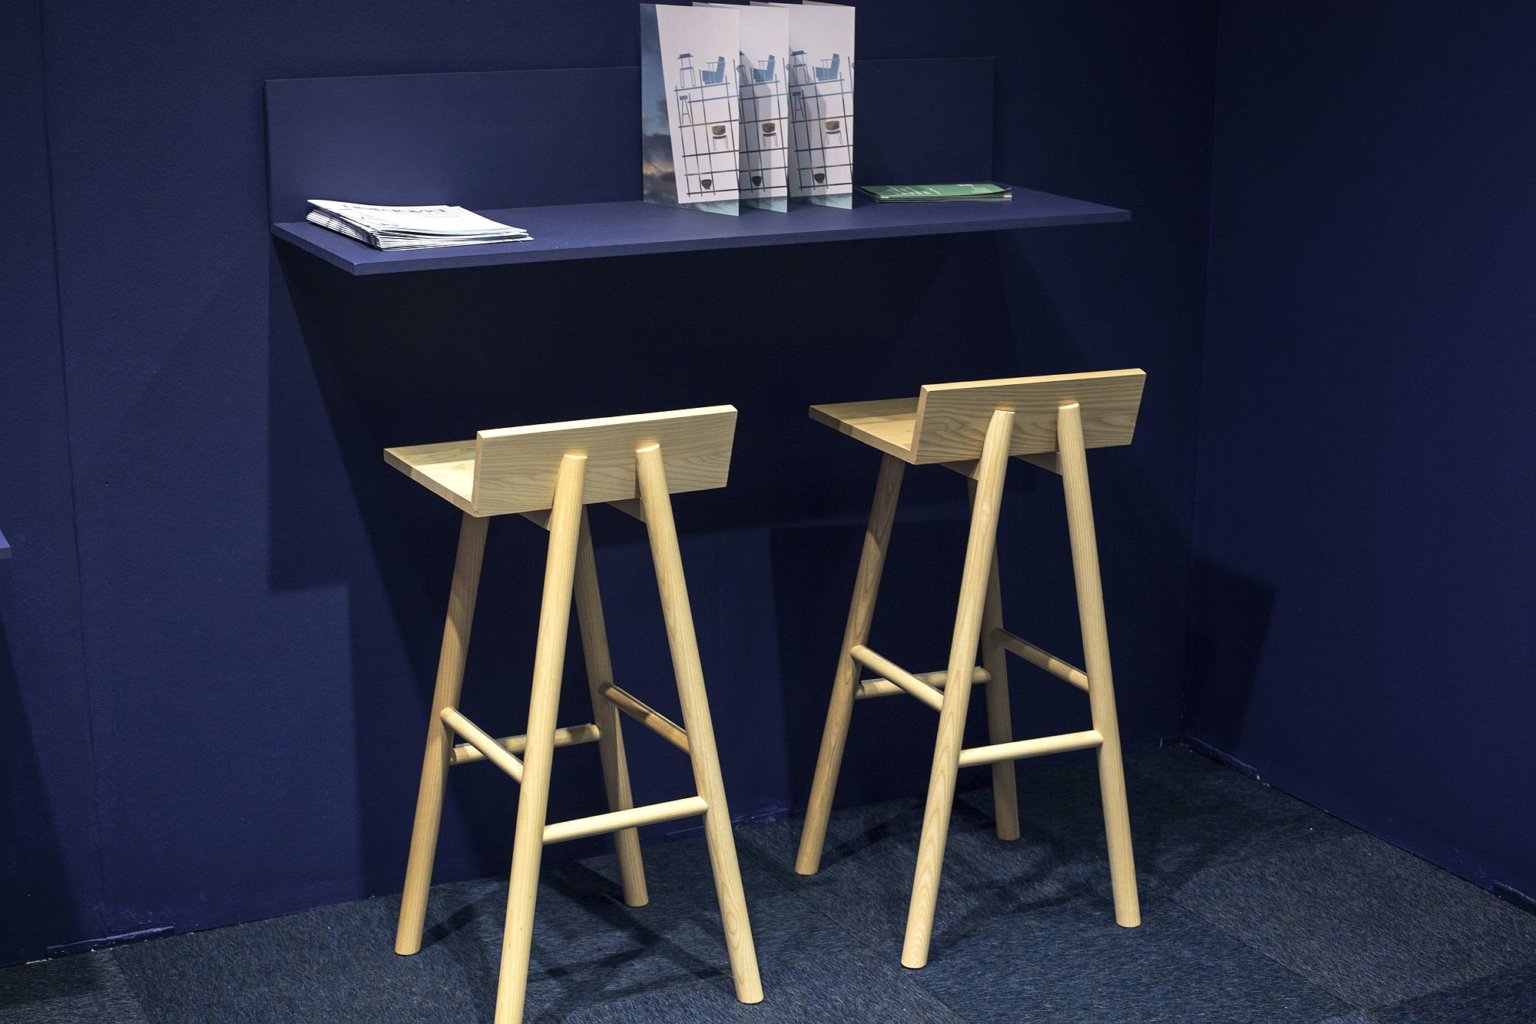 Cận cảnh góc làm viêc với bàn nhỏ gắn tường sơn xanh than, ghế bar bằng gỗ màu trắng